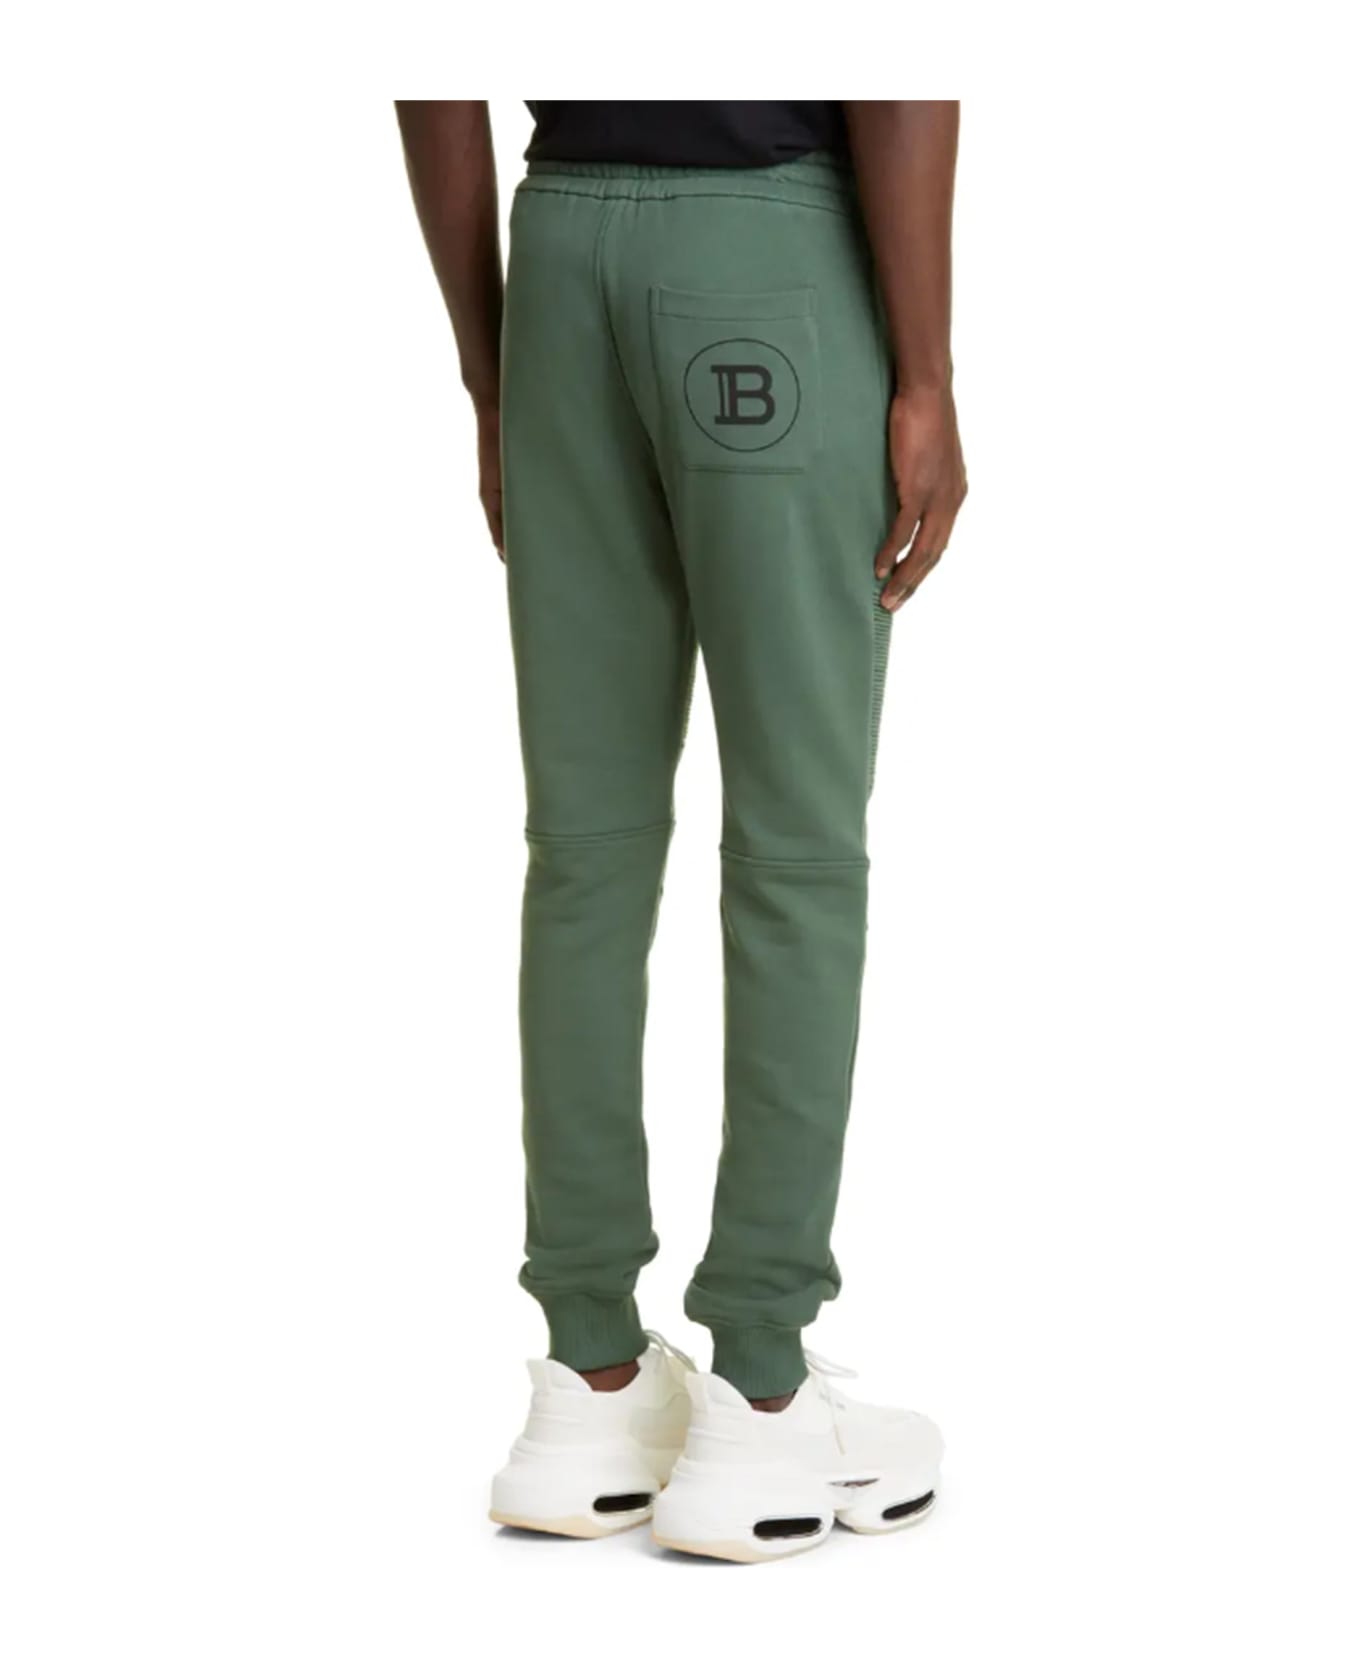 Balmain Logo Printed Drawstring Jogger Pants - Green スウェットパンツ